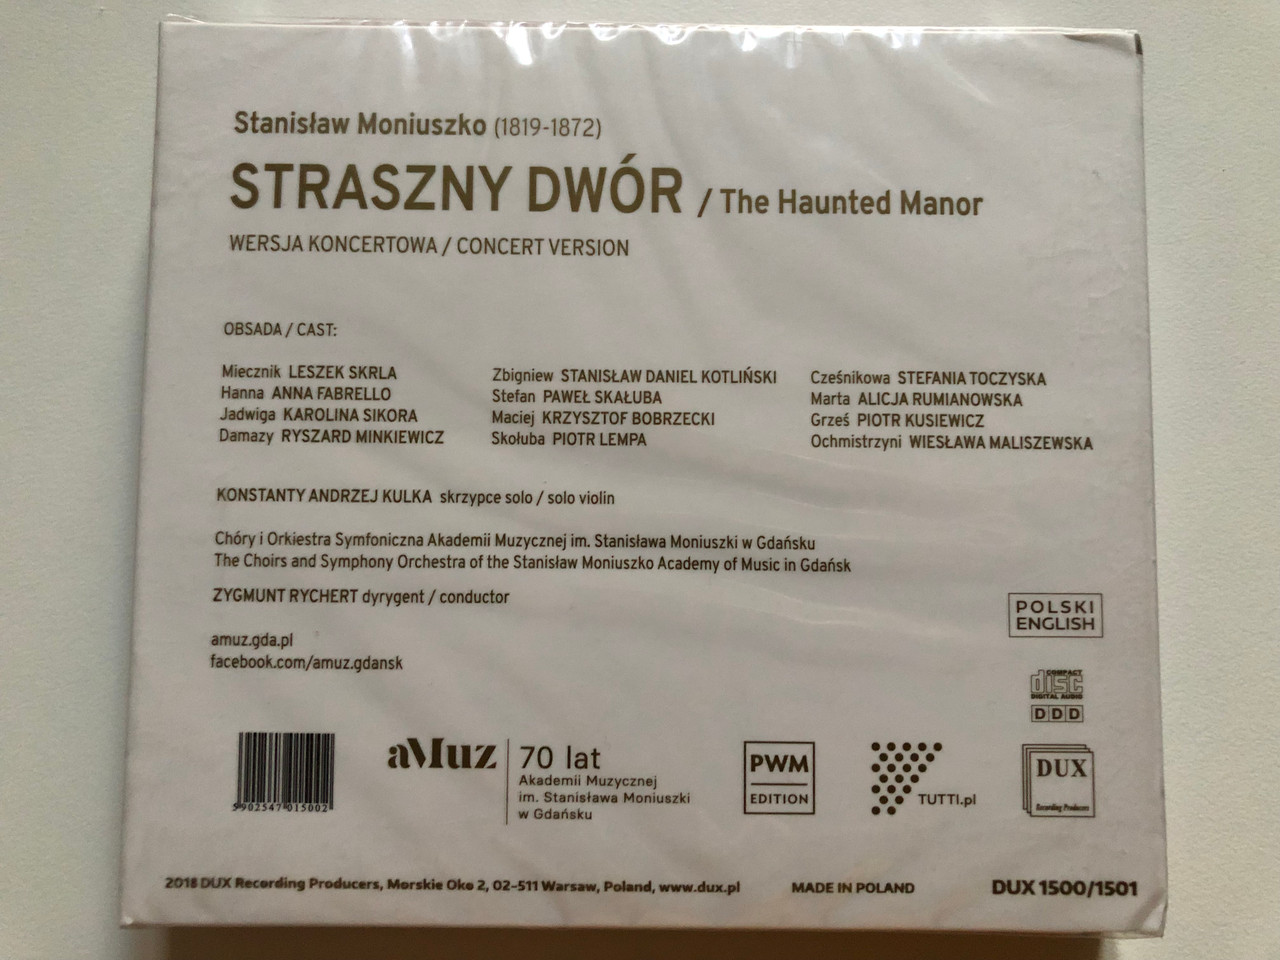 https://cdn10.bigcommerce.com/s-62bdpkt7pb/products/0/images/265147/Stanislaw_Moniuszko_-_Straszny_Dwor_Chory_i_Orkiestra_Akademii_Muzycznej_Im._Stanislawa_Moniuszki_W_Gdansku_Pod_Batuta_Zygmunta_Rycherta_DUX_Recording_2x_Audio_CD_2018_DUX_15001501_2__72223.1675068818.1280.1280.JPG?c=2&_gl=1*xxzdw4*_ga*MjA2NTIxMjE2MC4xNTkwNTEyNTMy*_ga_WS2VZYPC6G*MTY3NTA2NDAxMC43MzQuMS4xNjc1MDY4ODE4LjYwLjAuMA..